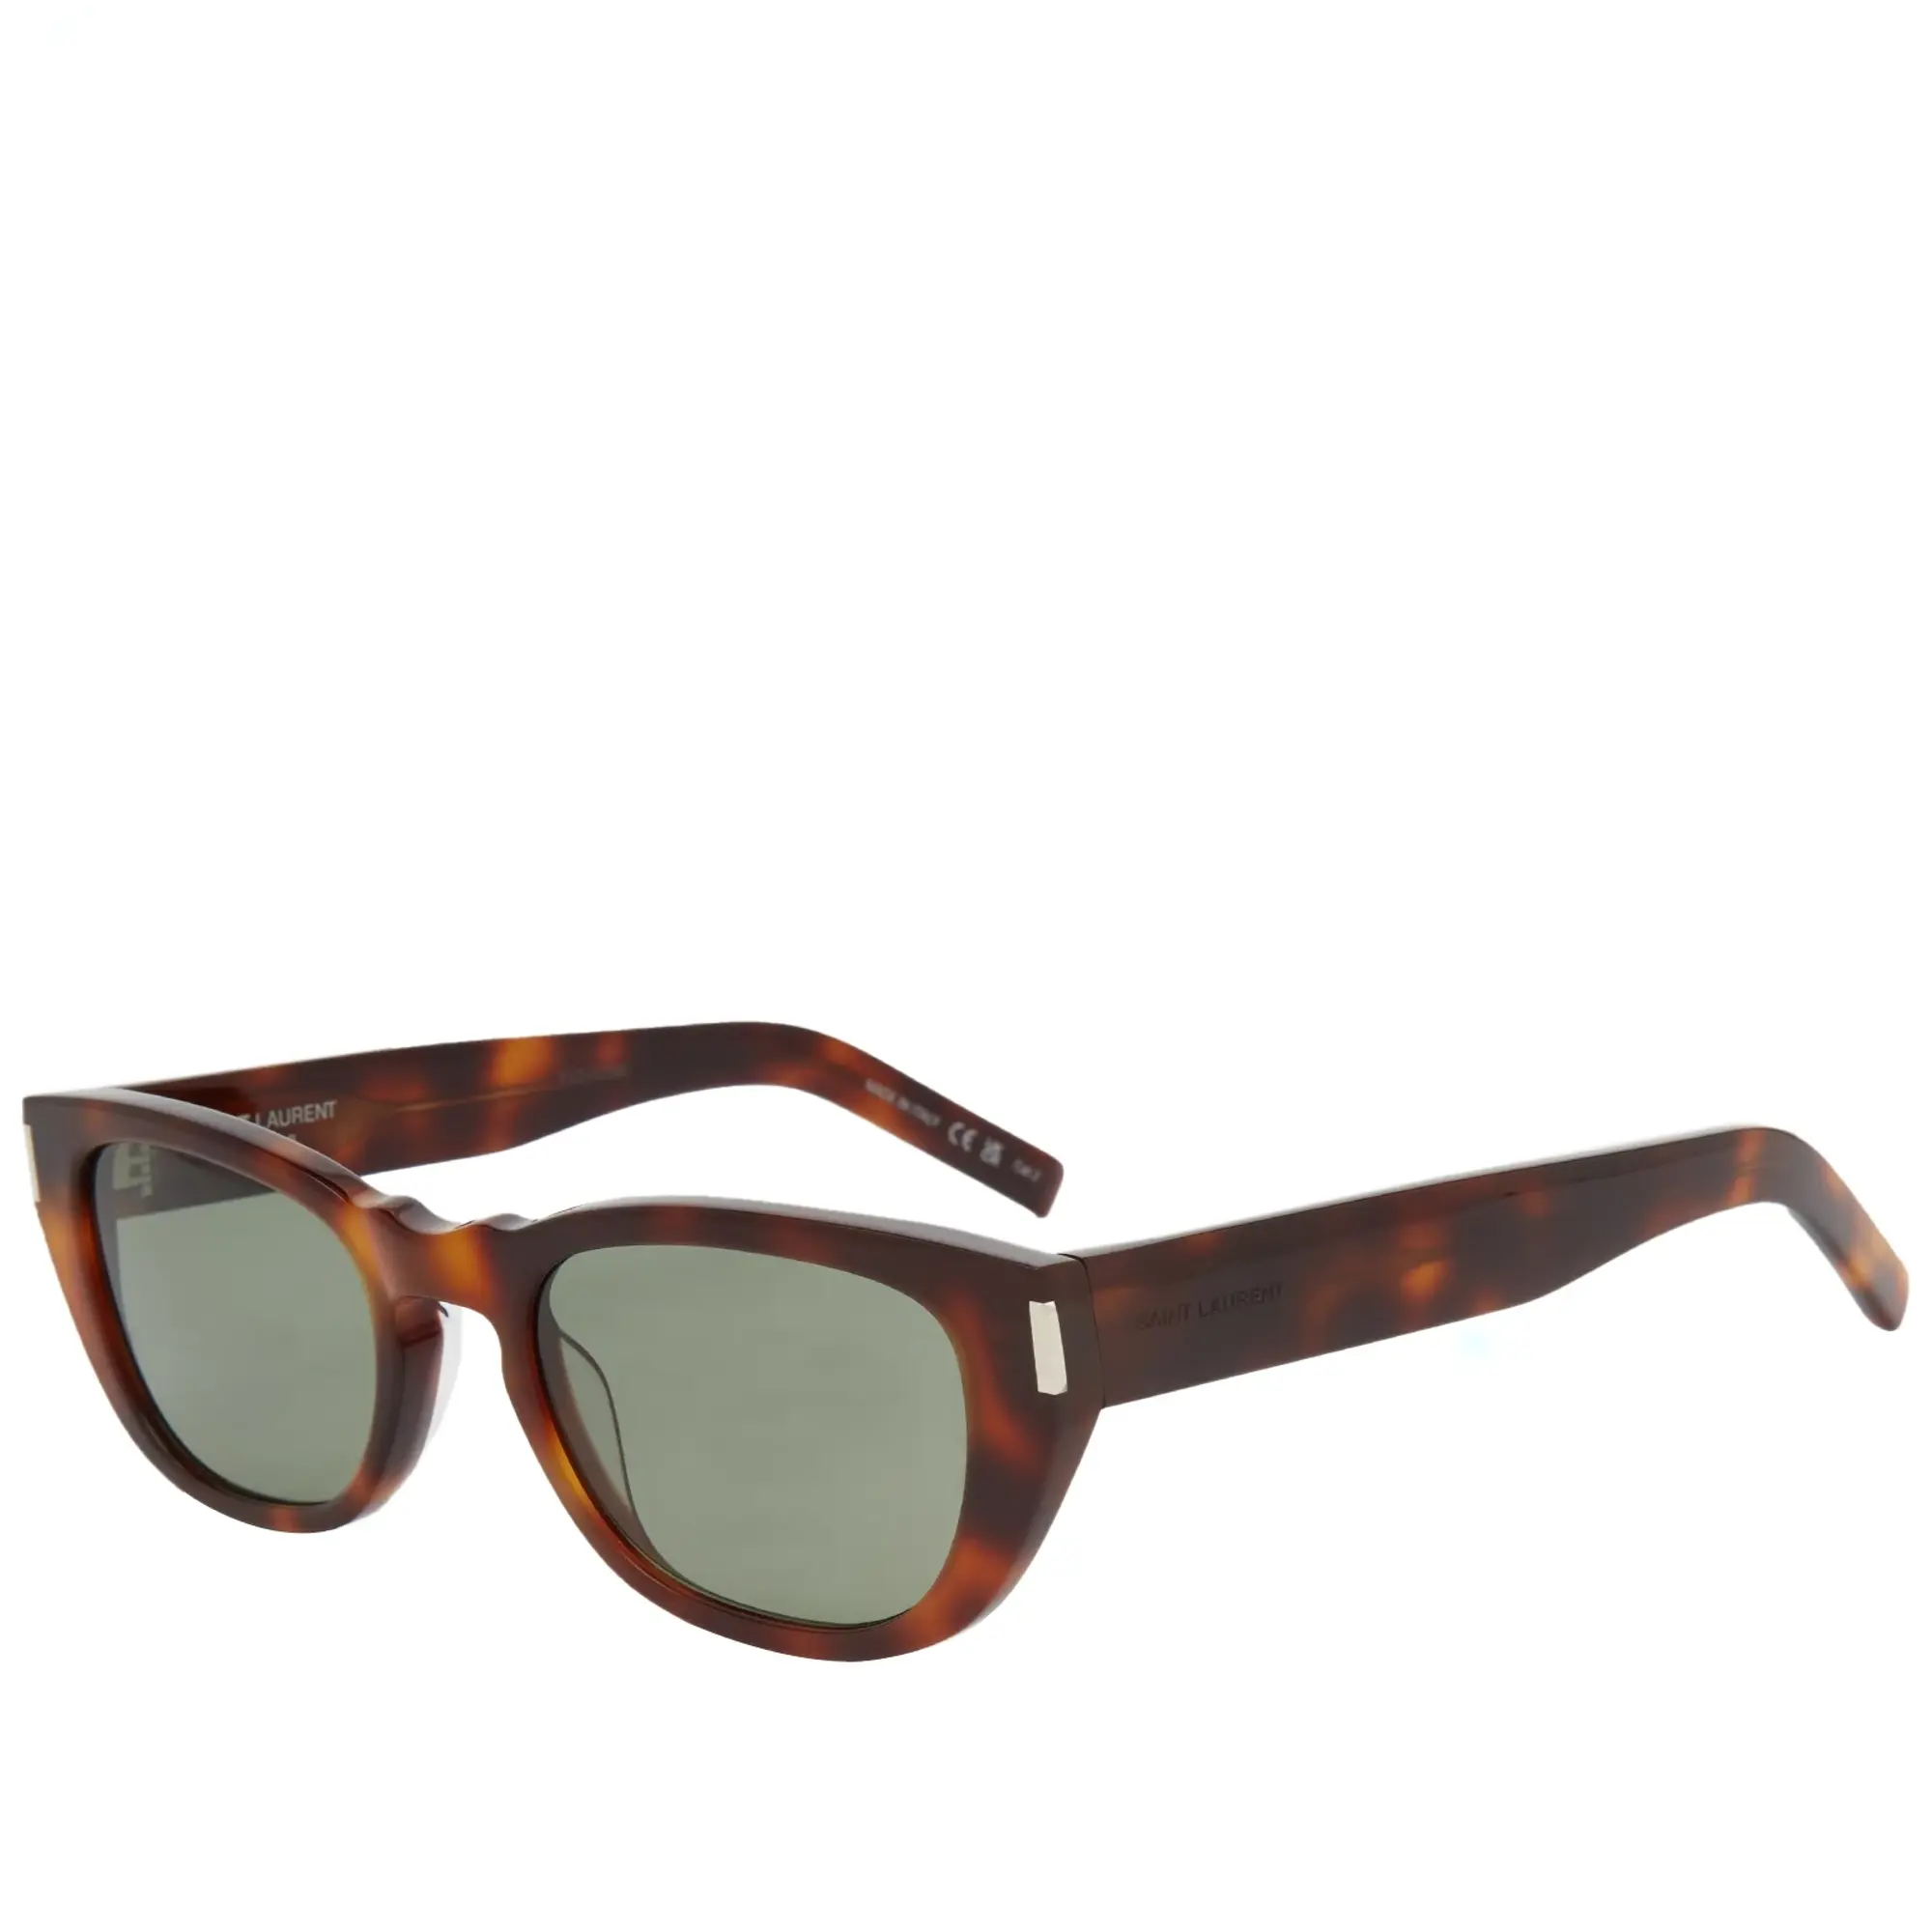 Saint Laurent Men's SL 601 Sunglasses Havana/Green